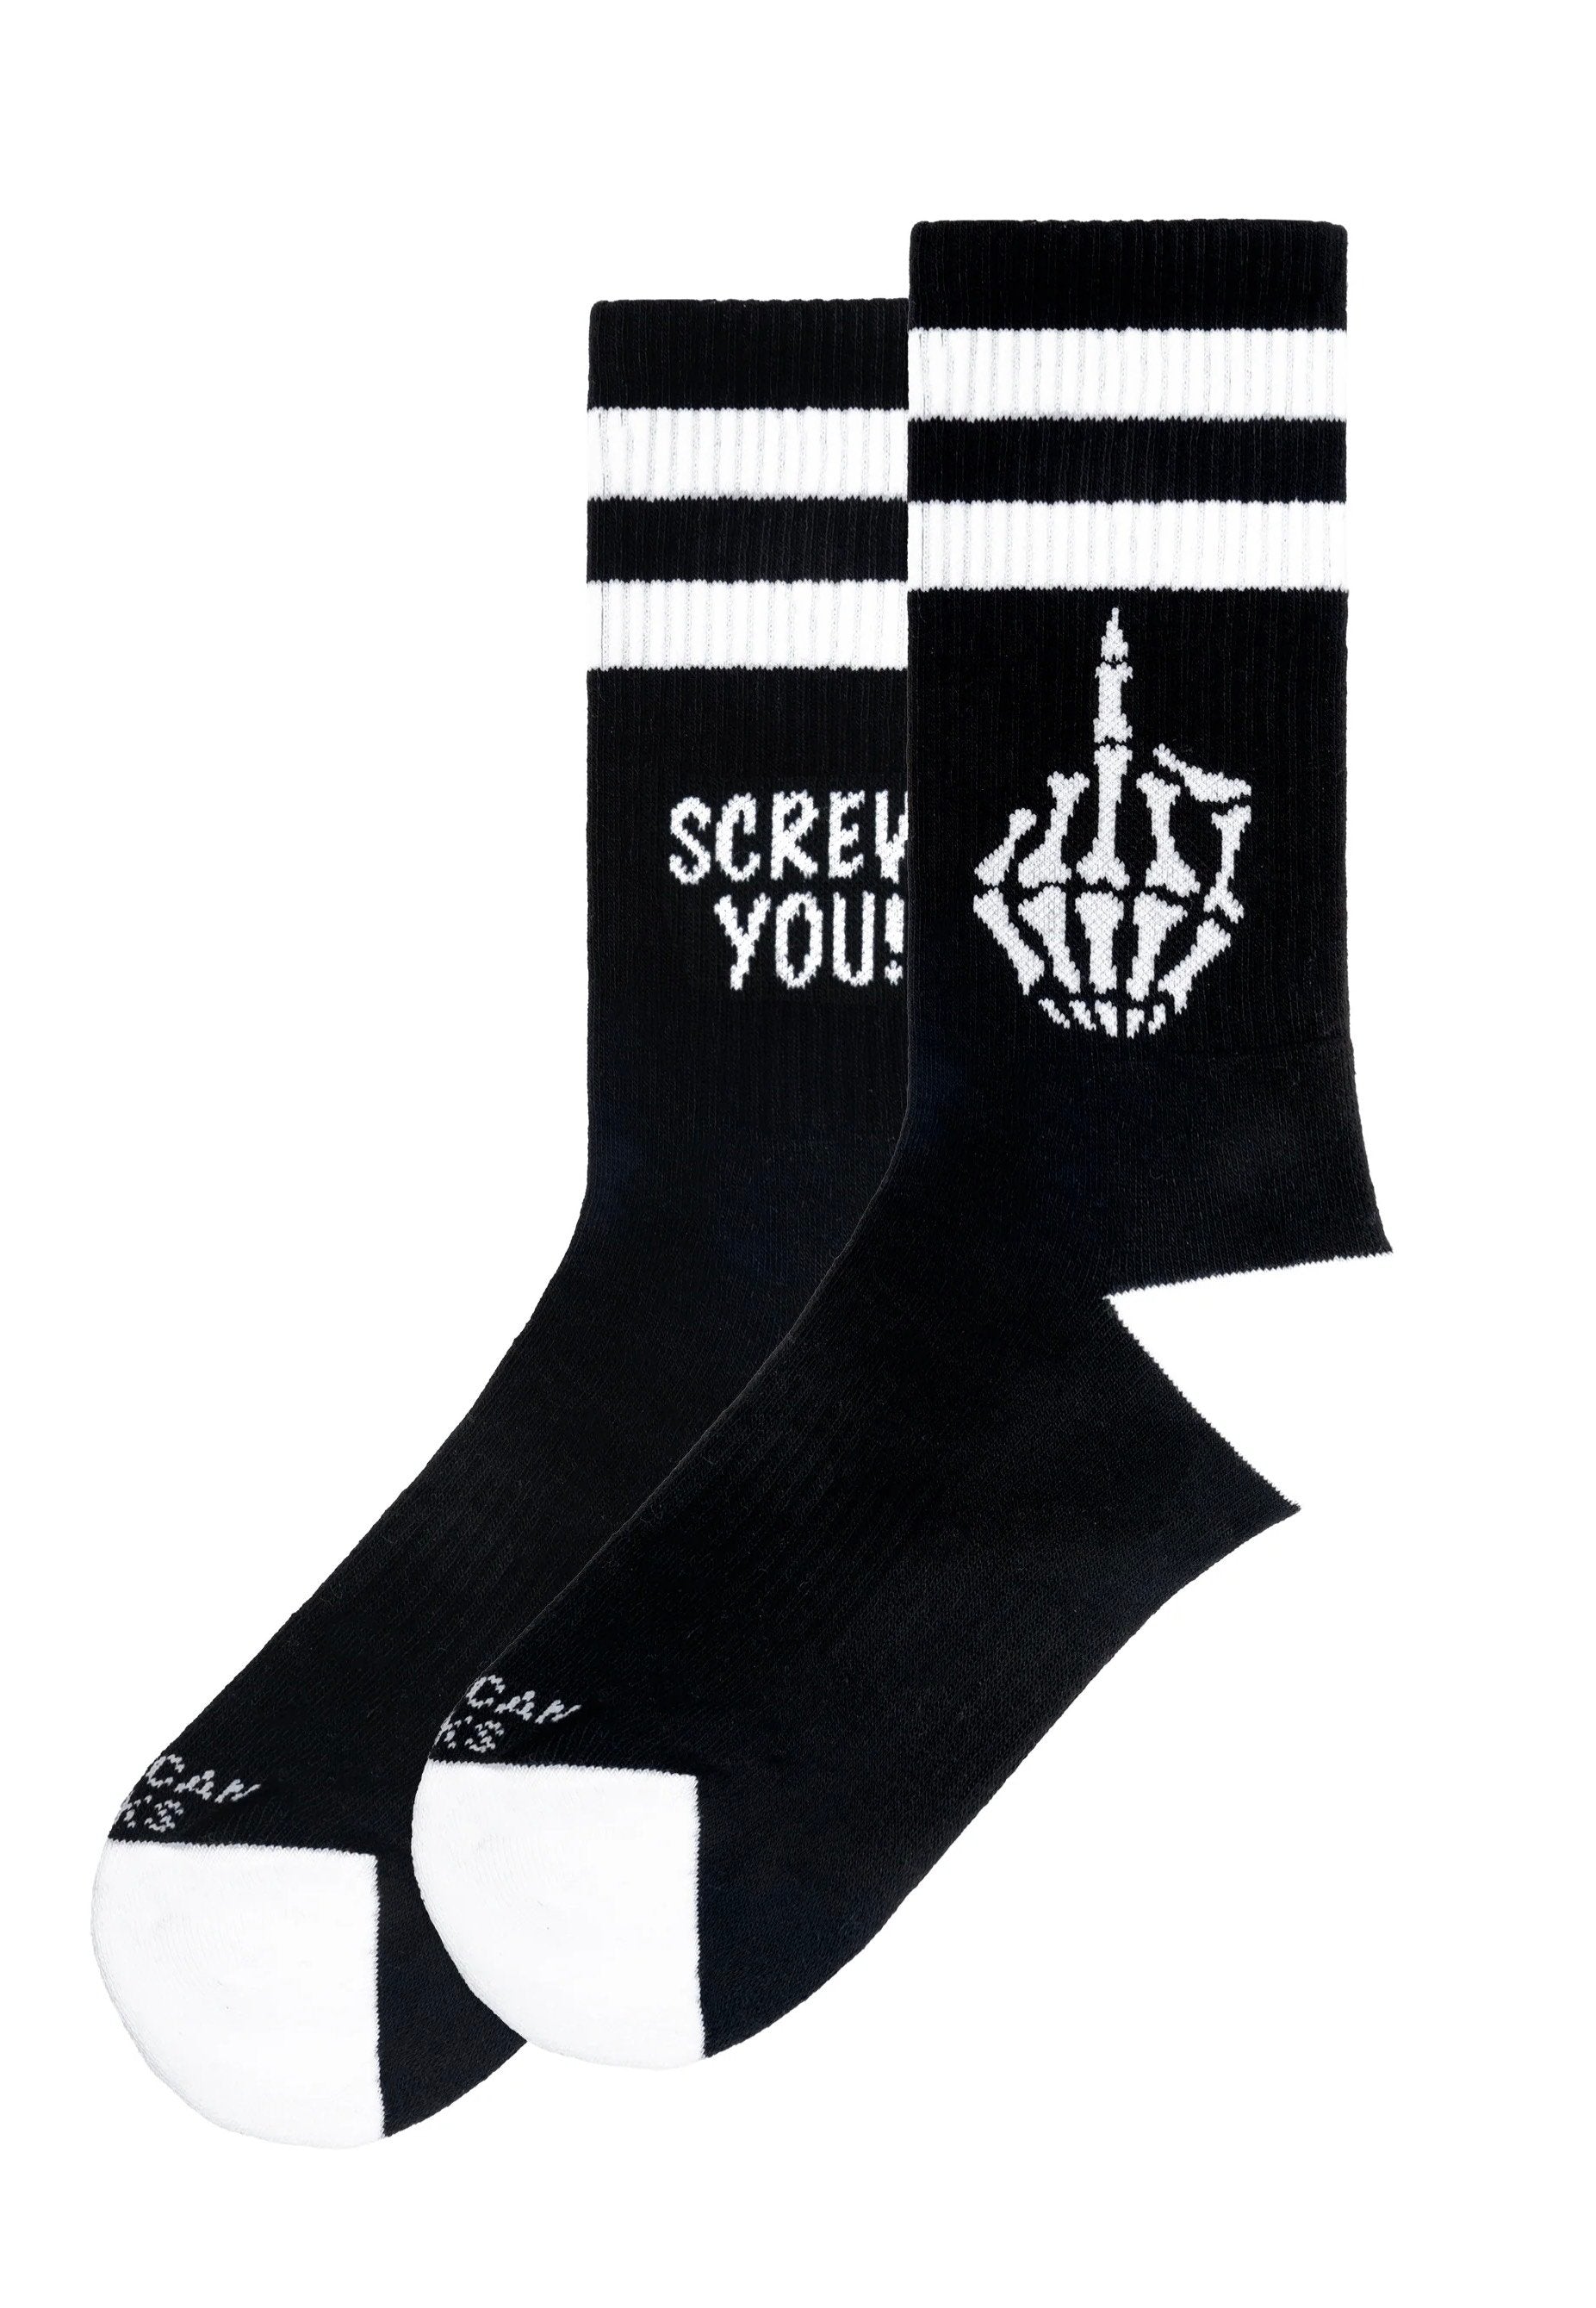 American Socks - Screw You Mid High - Socks